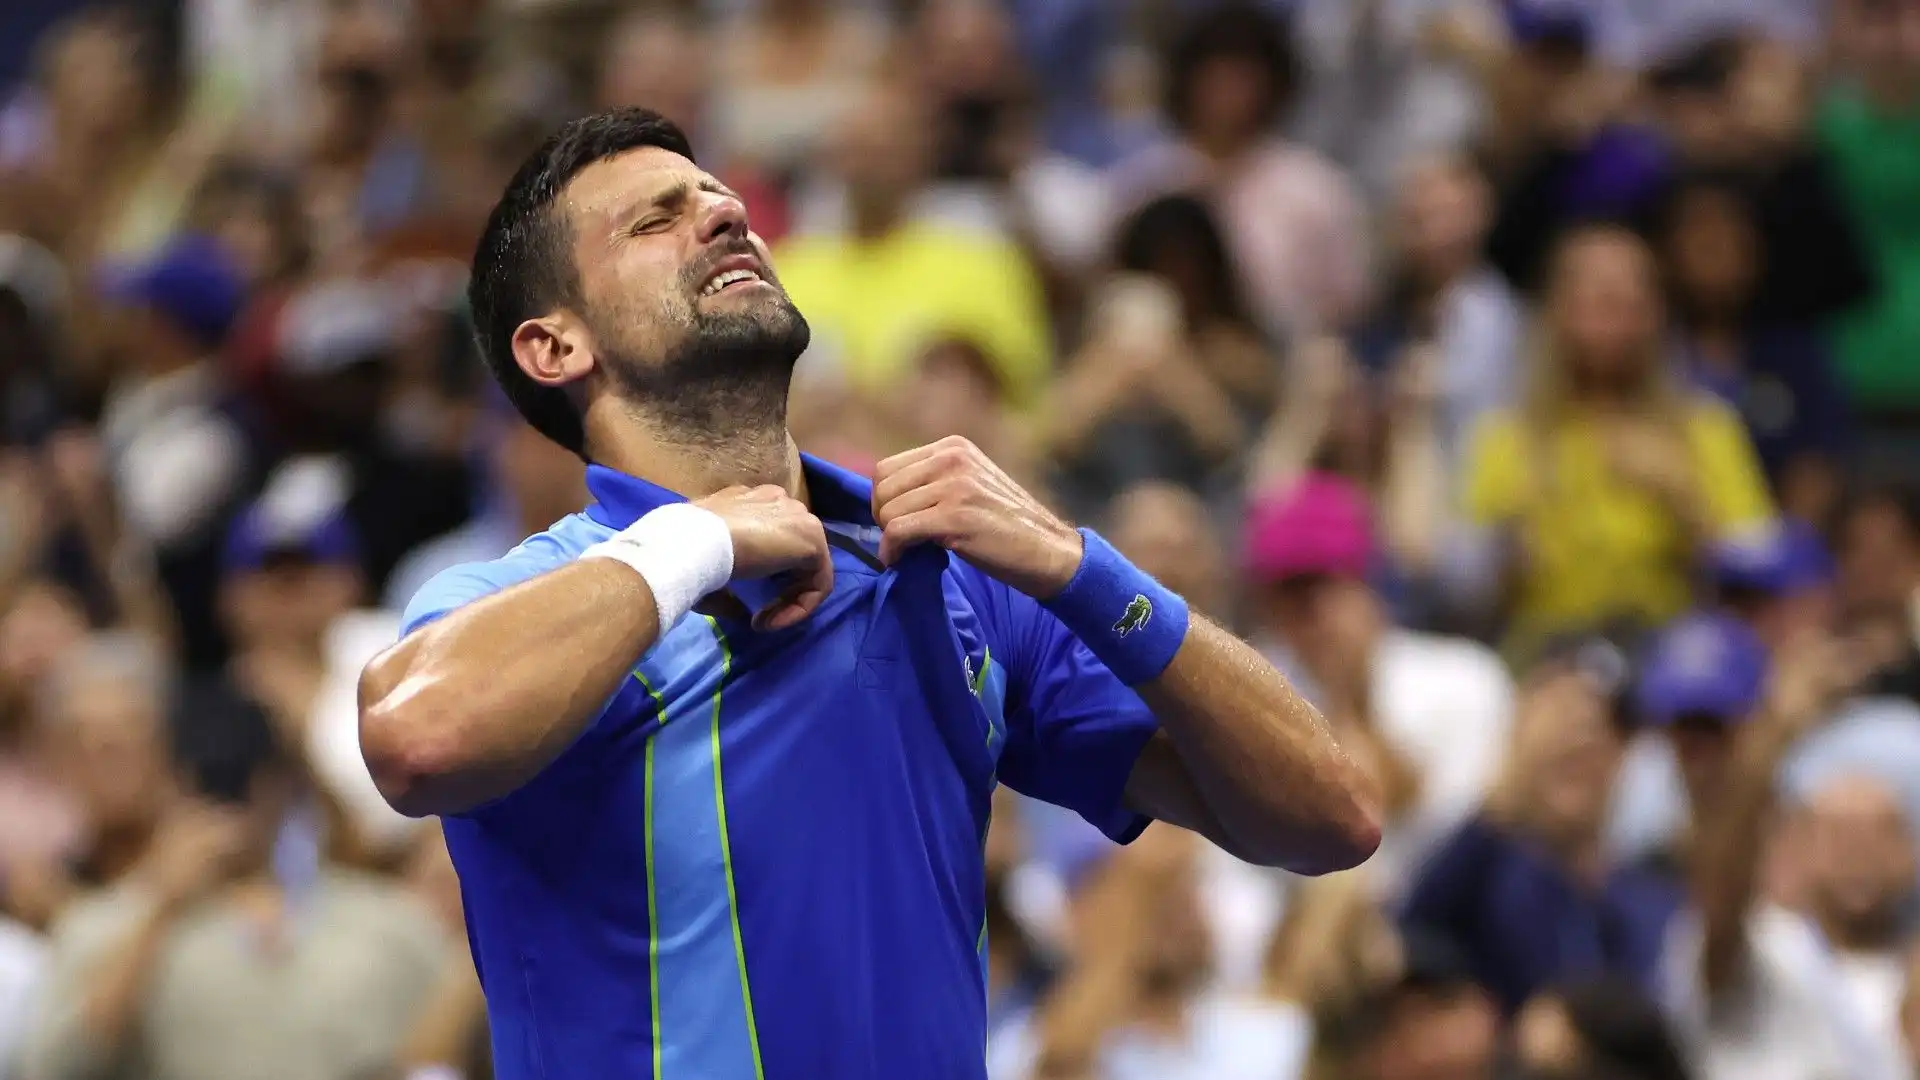 La dedica di Djokovic fa commuovere tutto il mondo: le immagini